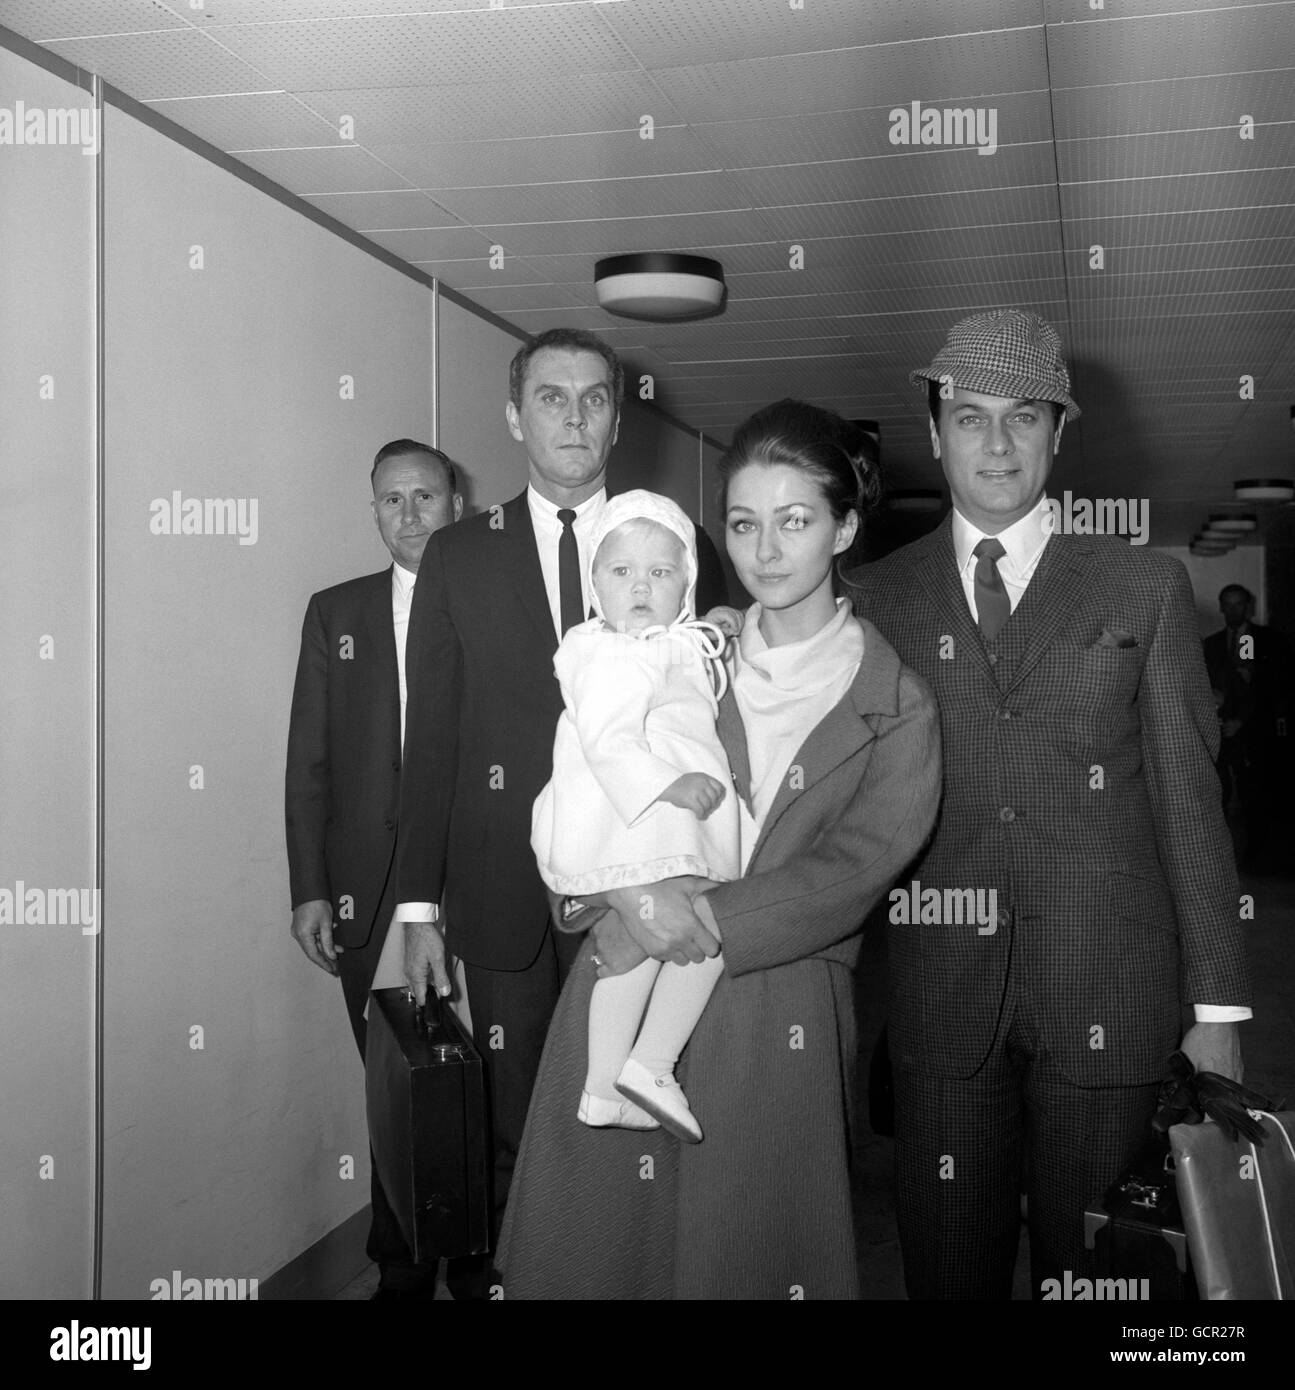 El actor estadounidense Tony Curtis, a la derecha, con su esposa, la actriz alemana Christine Kaufmann, y su hija de 14 meses Alexandra en el aeropuerto de Heathrow. Foto de stock